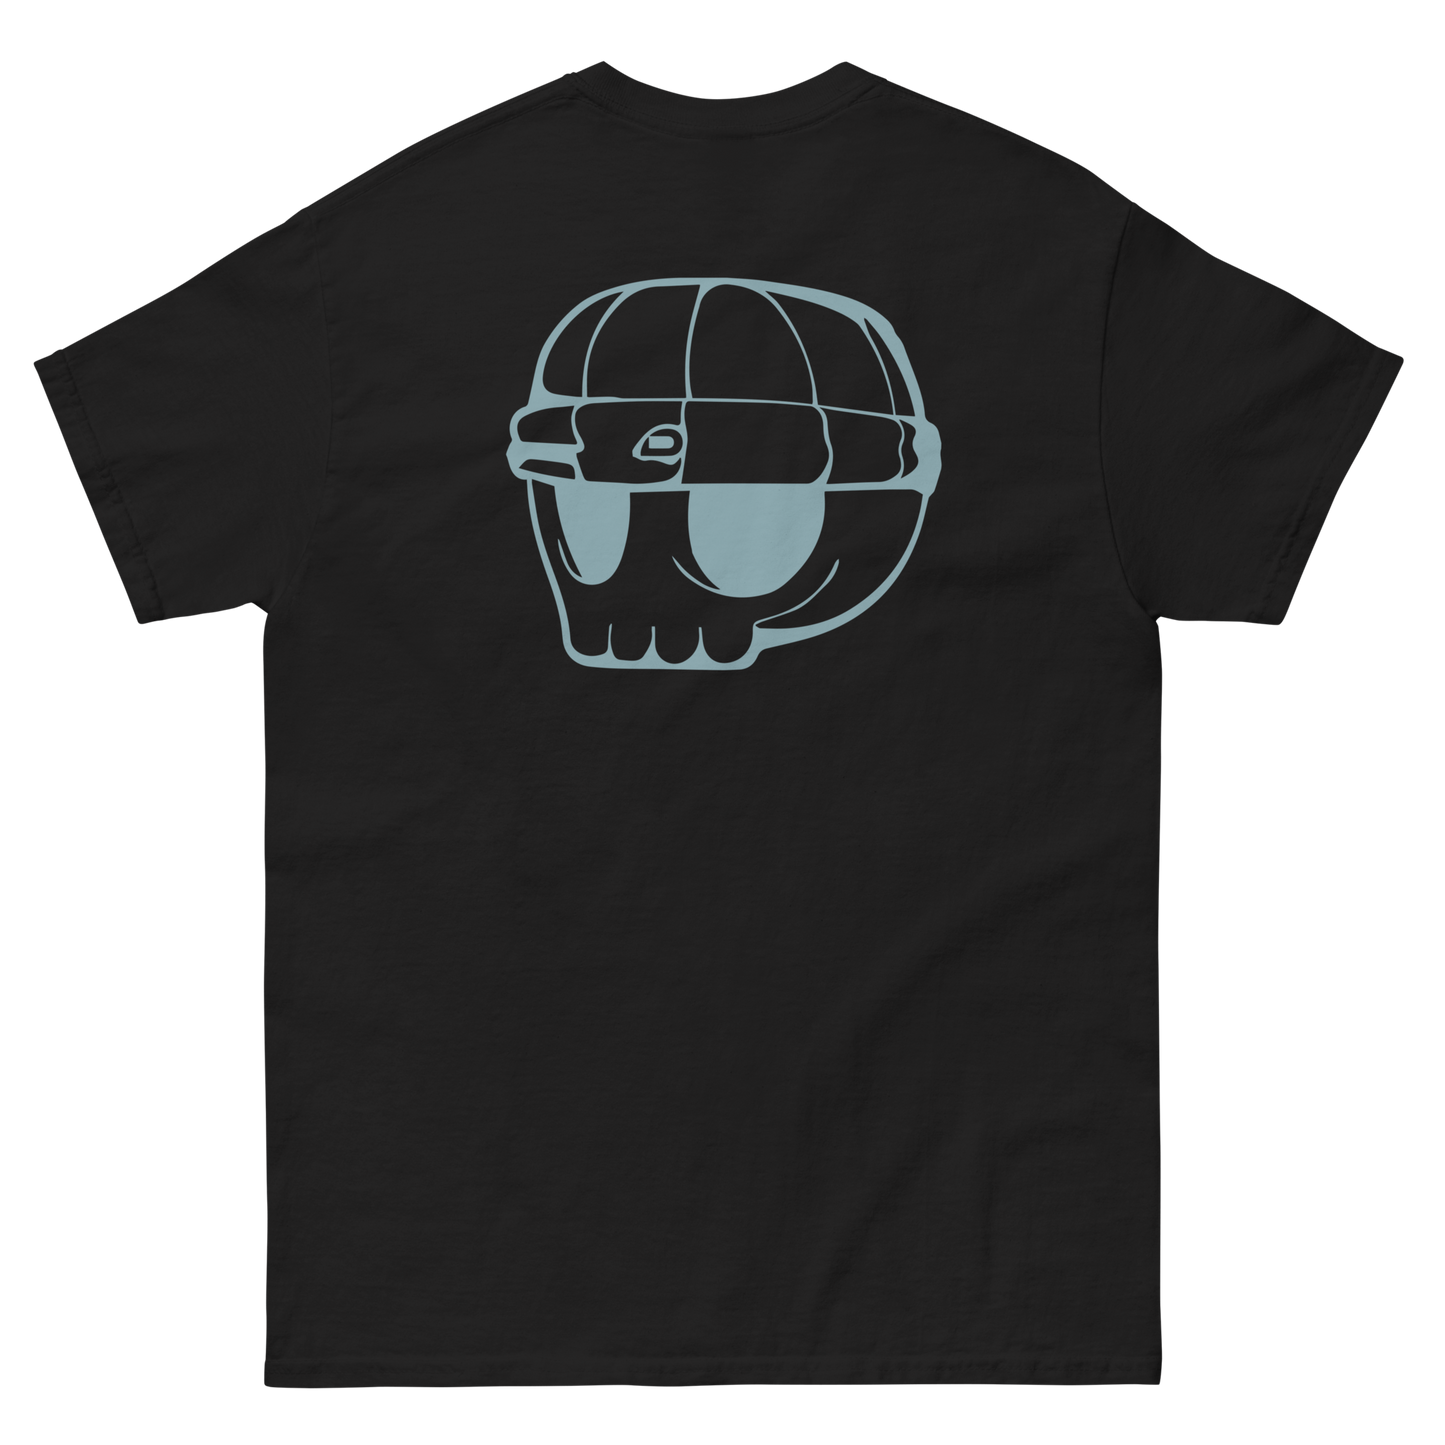 Black Unisex T-Shirt Duppy Skull Outline (Back Print)